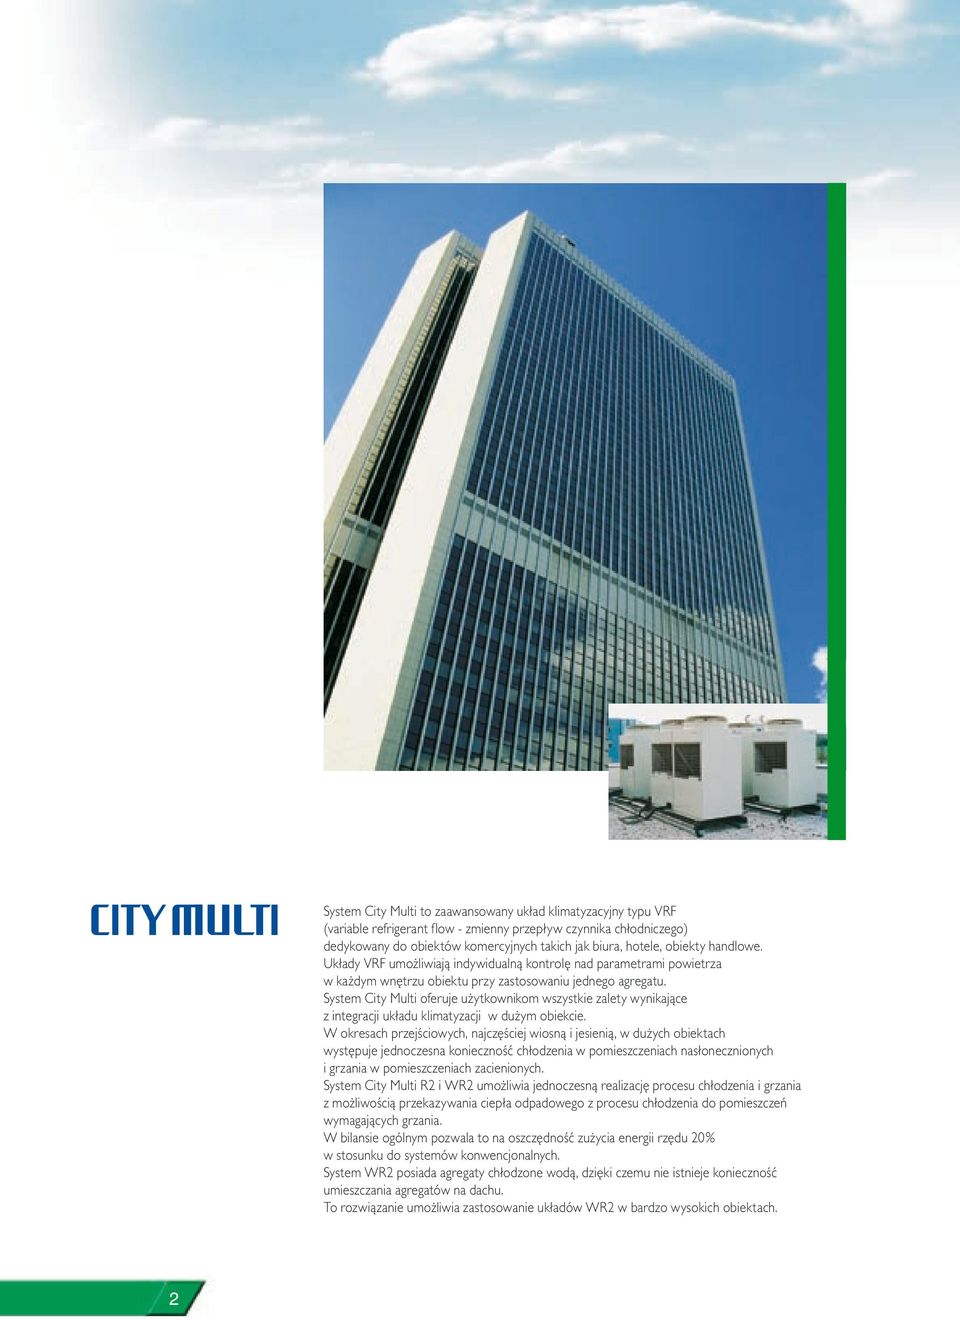 System City Multi oferuje użytkownikom wszystkie zalety wynikające z integracji układu klimatyzacji w dużym obiekcie.